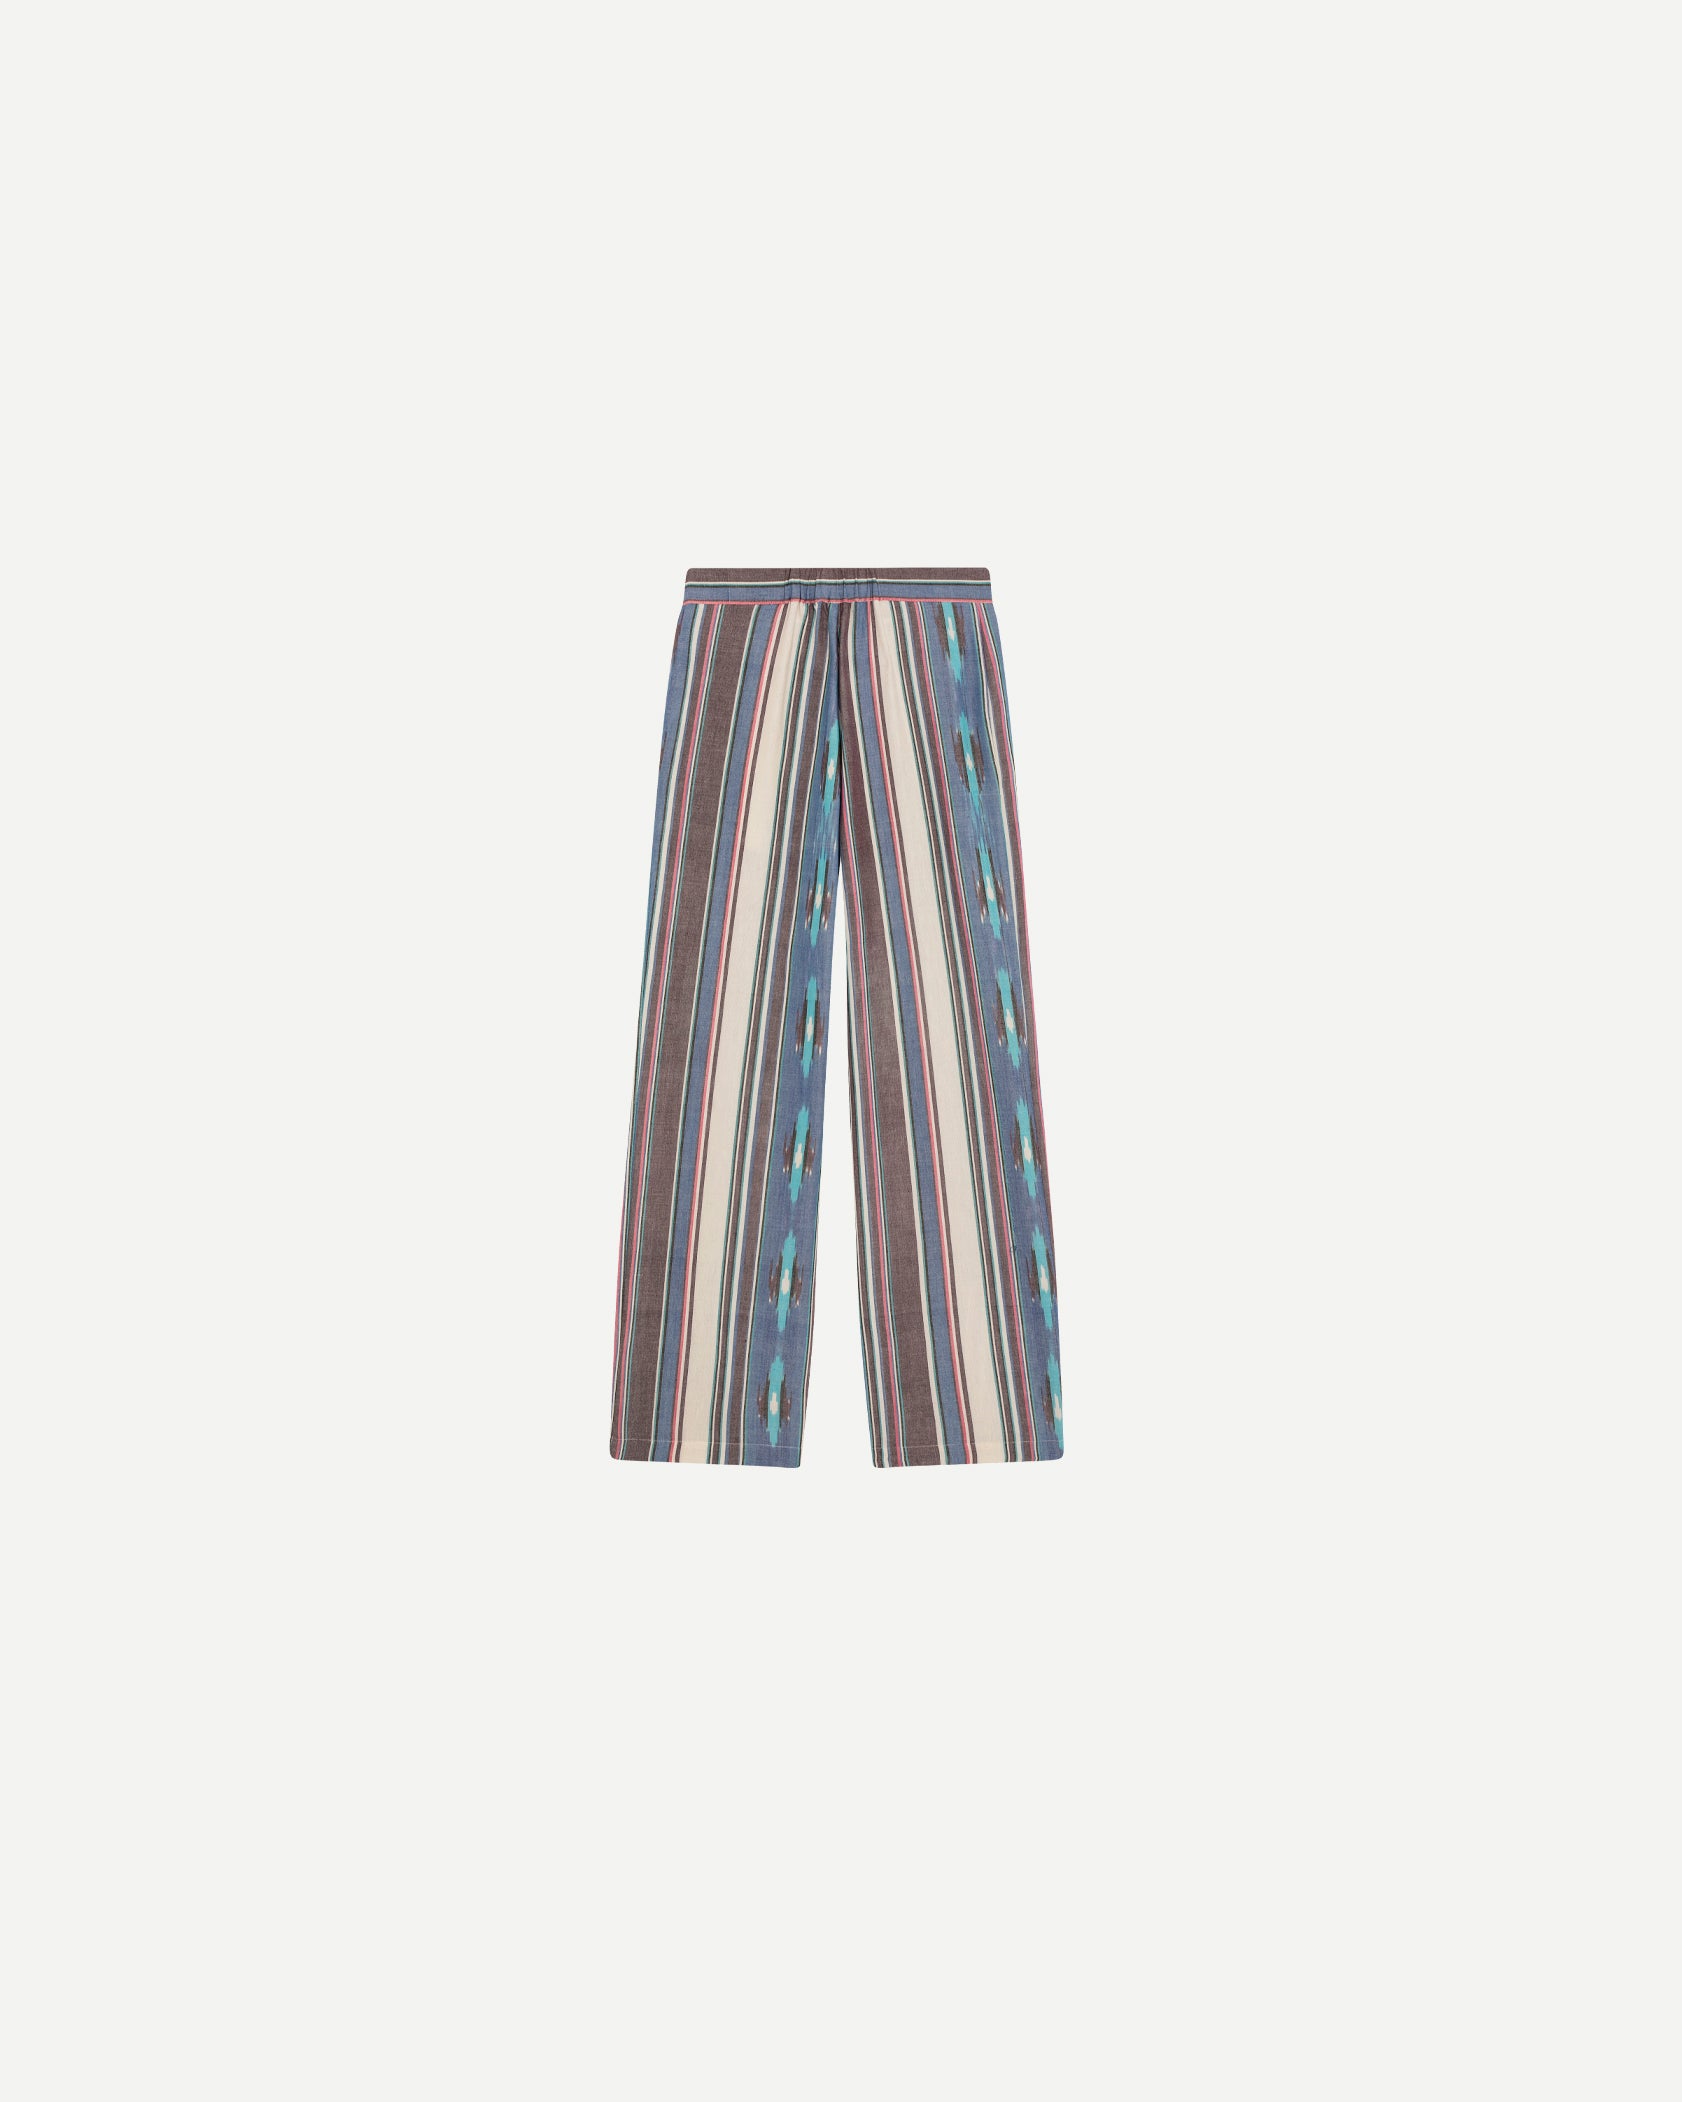 Pantalons de luxe pour homme Erevan, taille mi haute, ceinture dos elastique, coton ikat rayures colorées, fabriqué au portugal